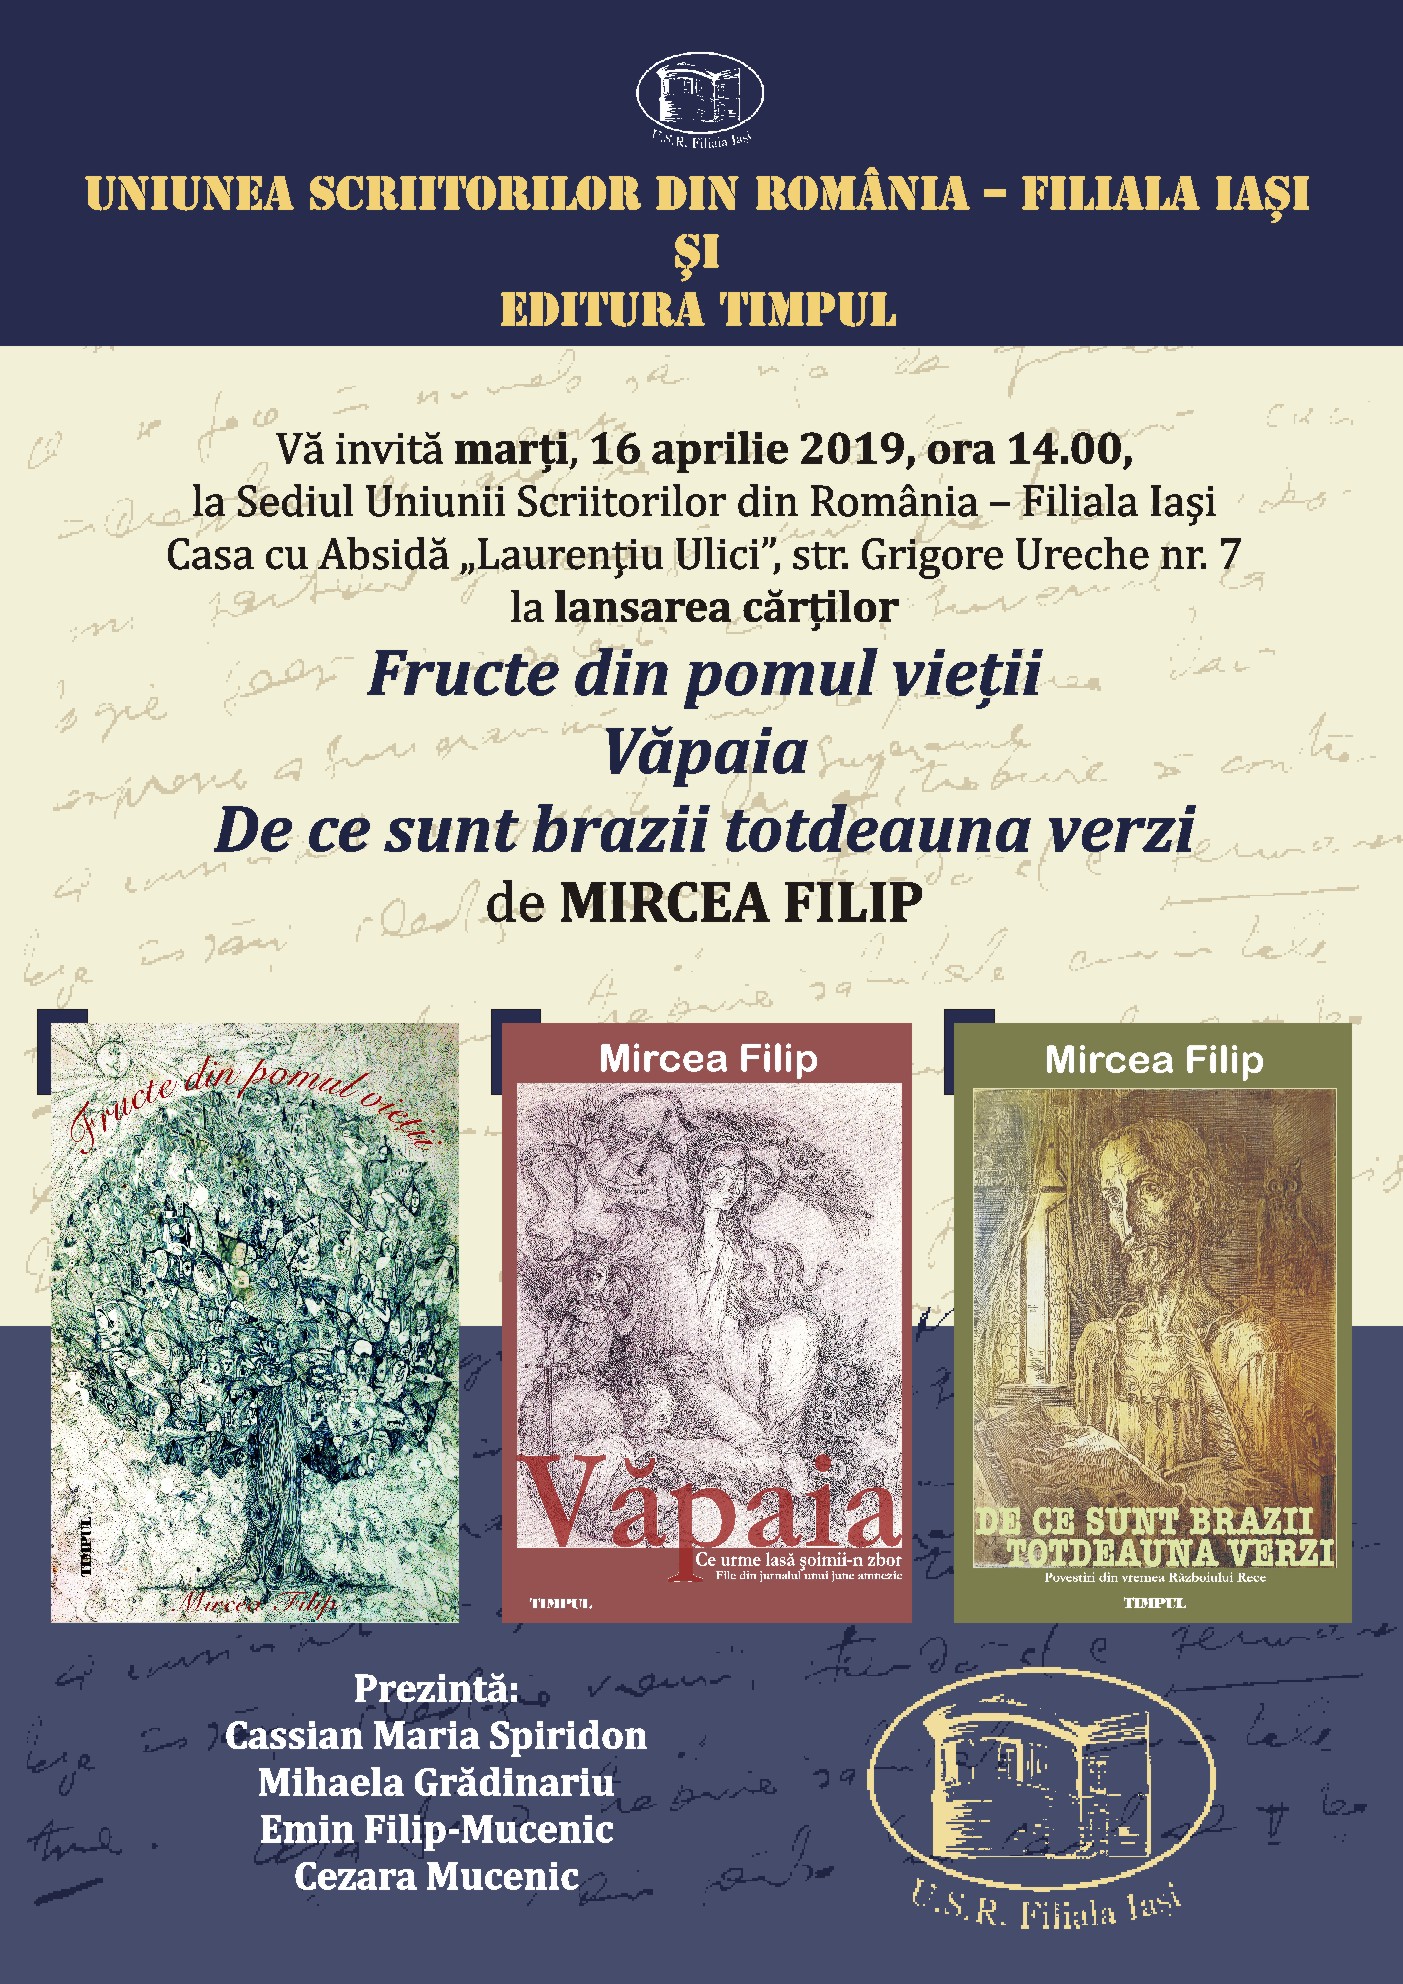 Lansarea cărților ”Fructe din pomul vieții”, ”Văpaia” și ”De ce sunt brazii totdeauna verzi”, autor Mircea Filip